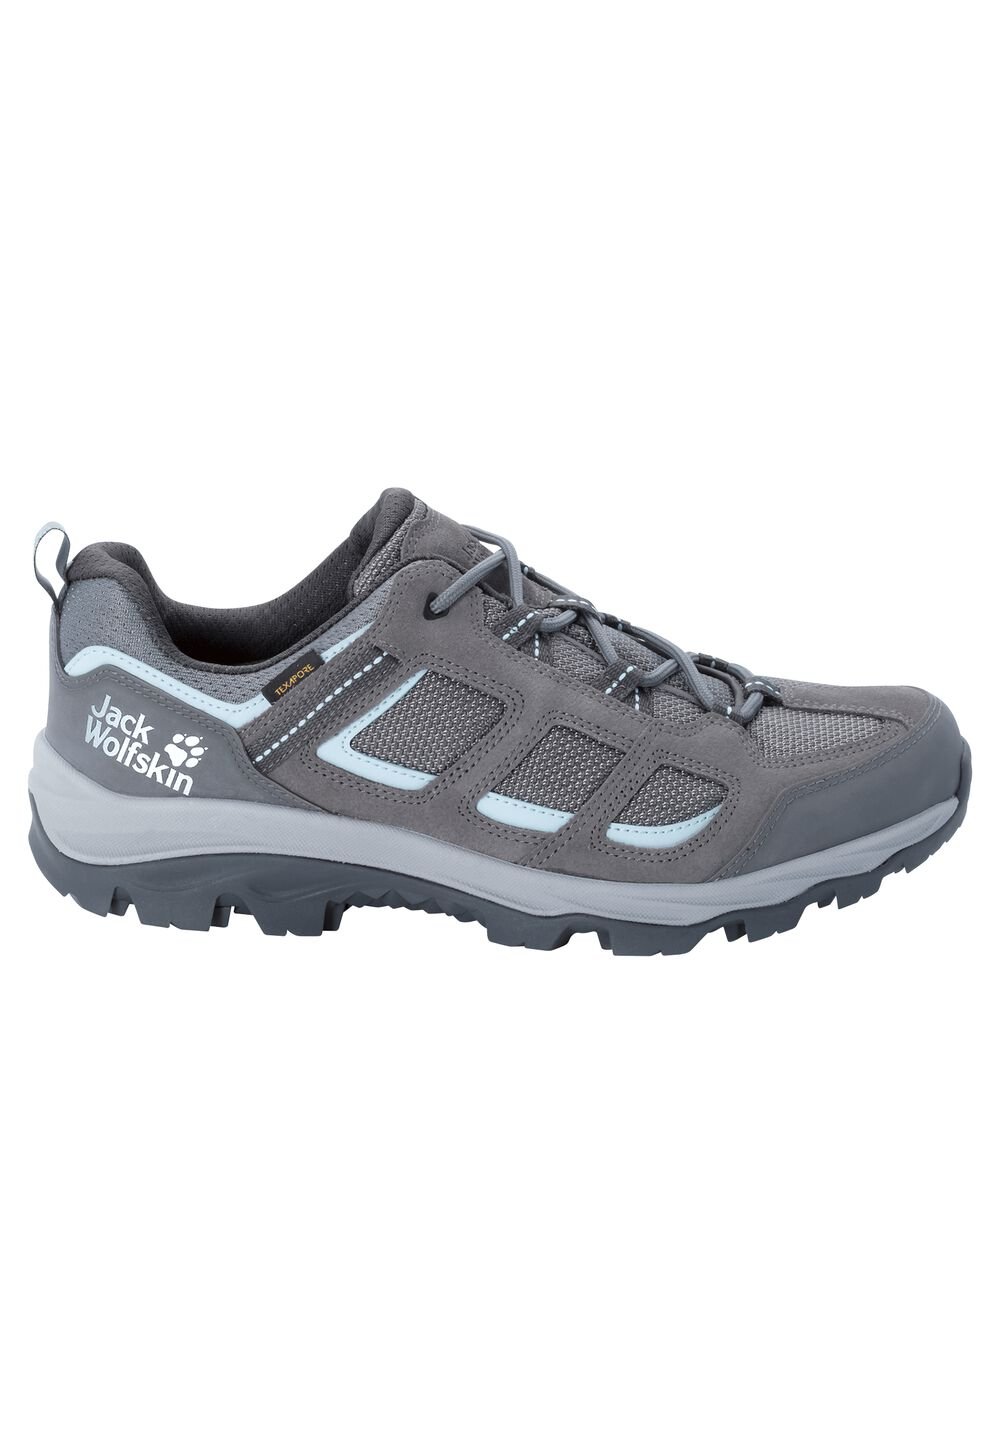 Chaussures de randonnée imperméables femmes Vojo 3 Texapore Low Women 3,5 gris tarmac grey / light b